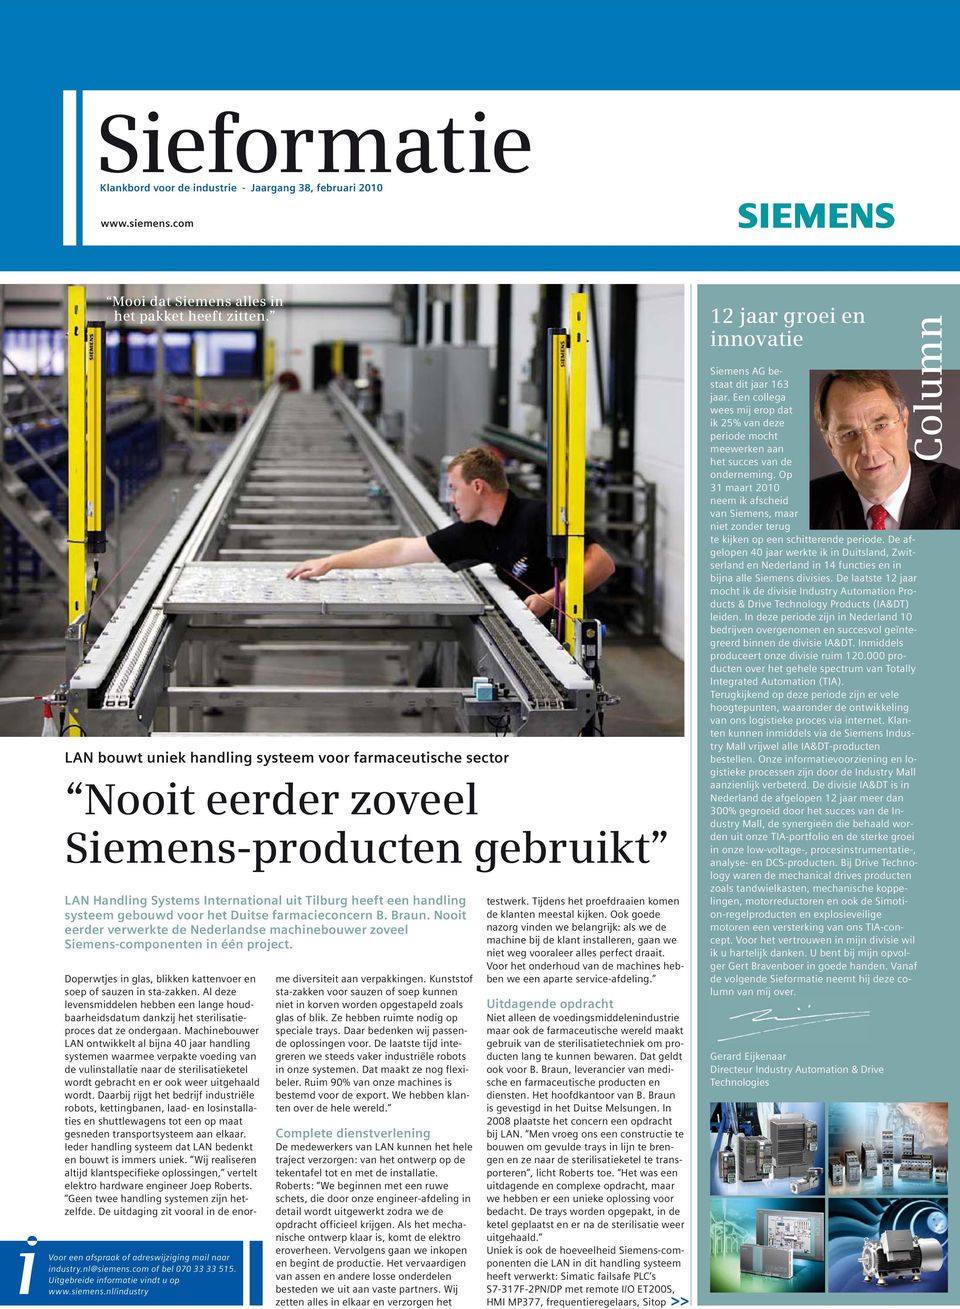 Duitse farmacieconcern B. Braun. Nooit eerder verwerkte de Nederlandse machinebouwer zoveel Siemens-componenten in één project. industry.nl@siemens.com of bel 070 33 33 515.